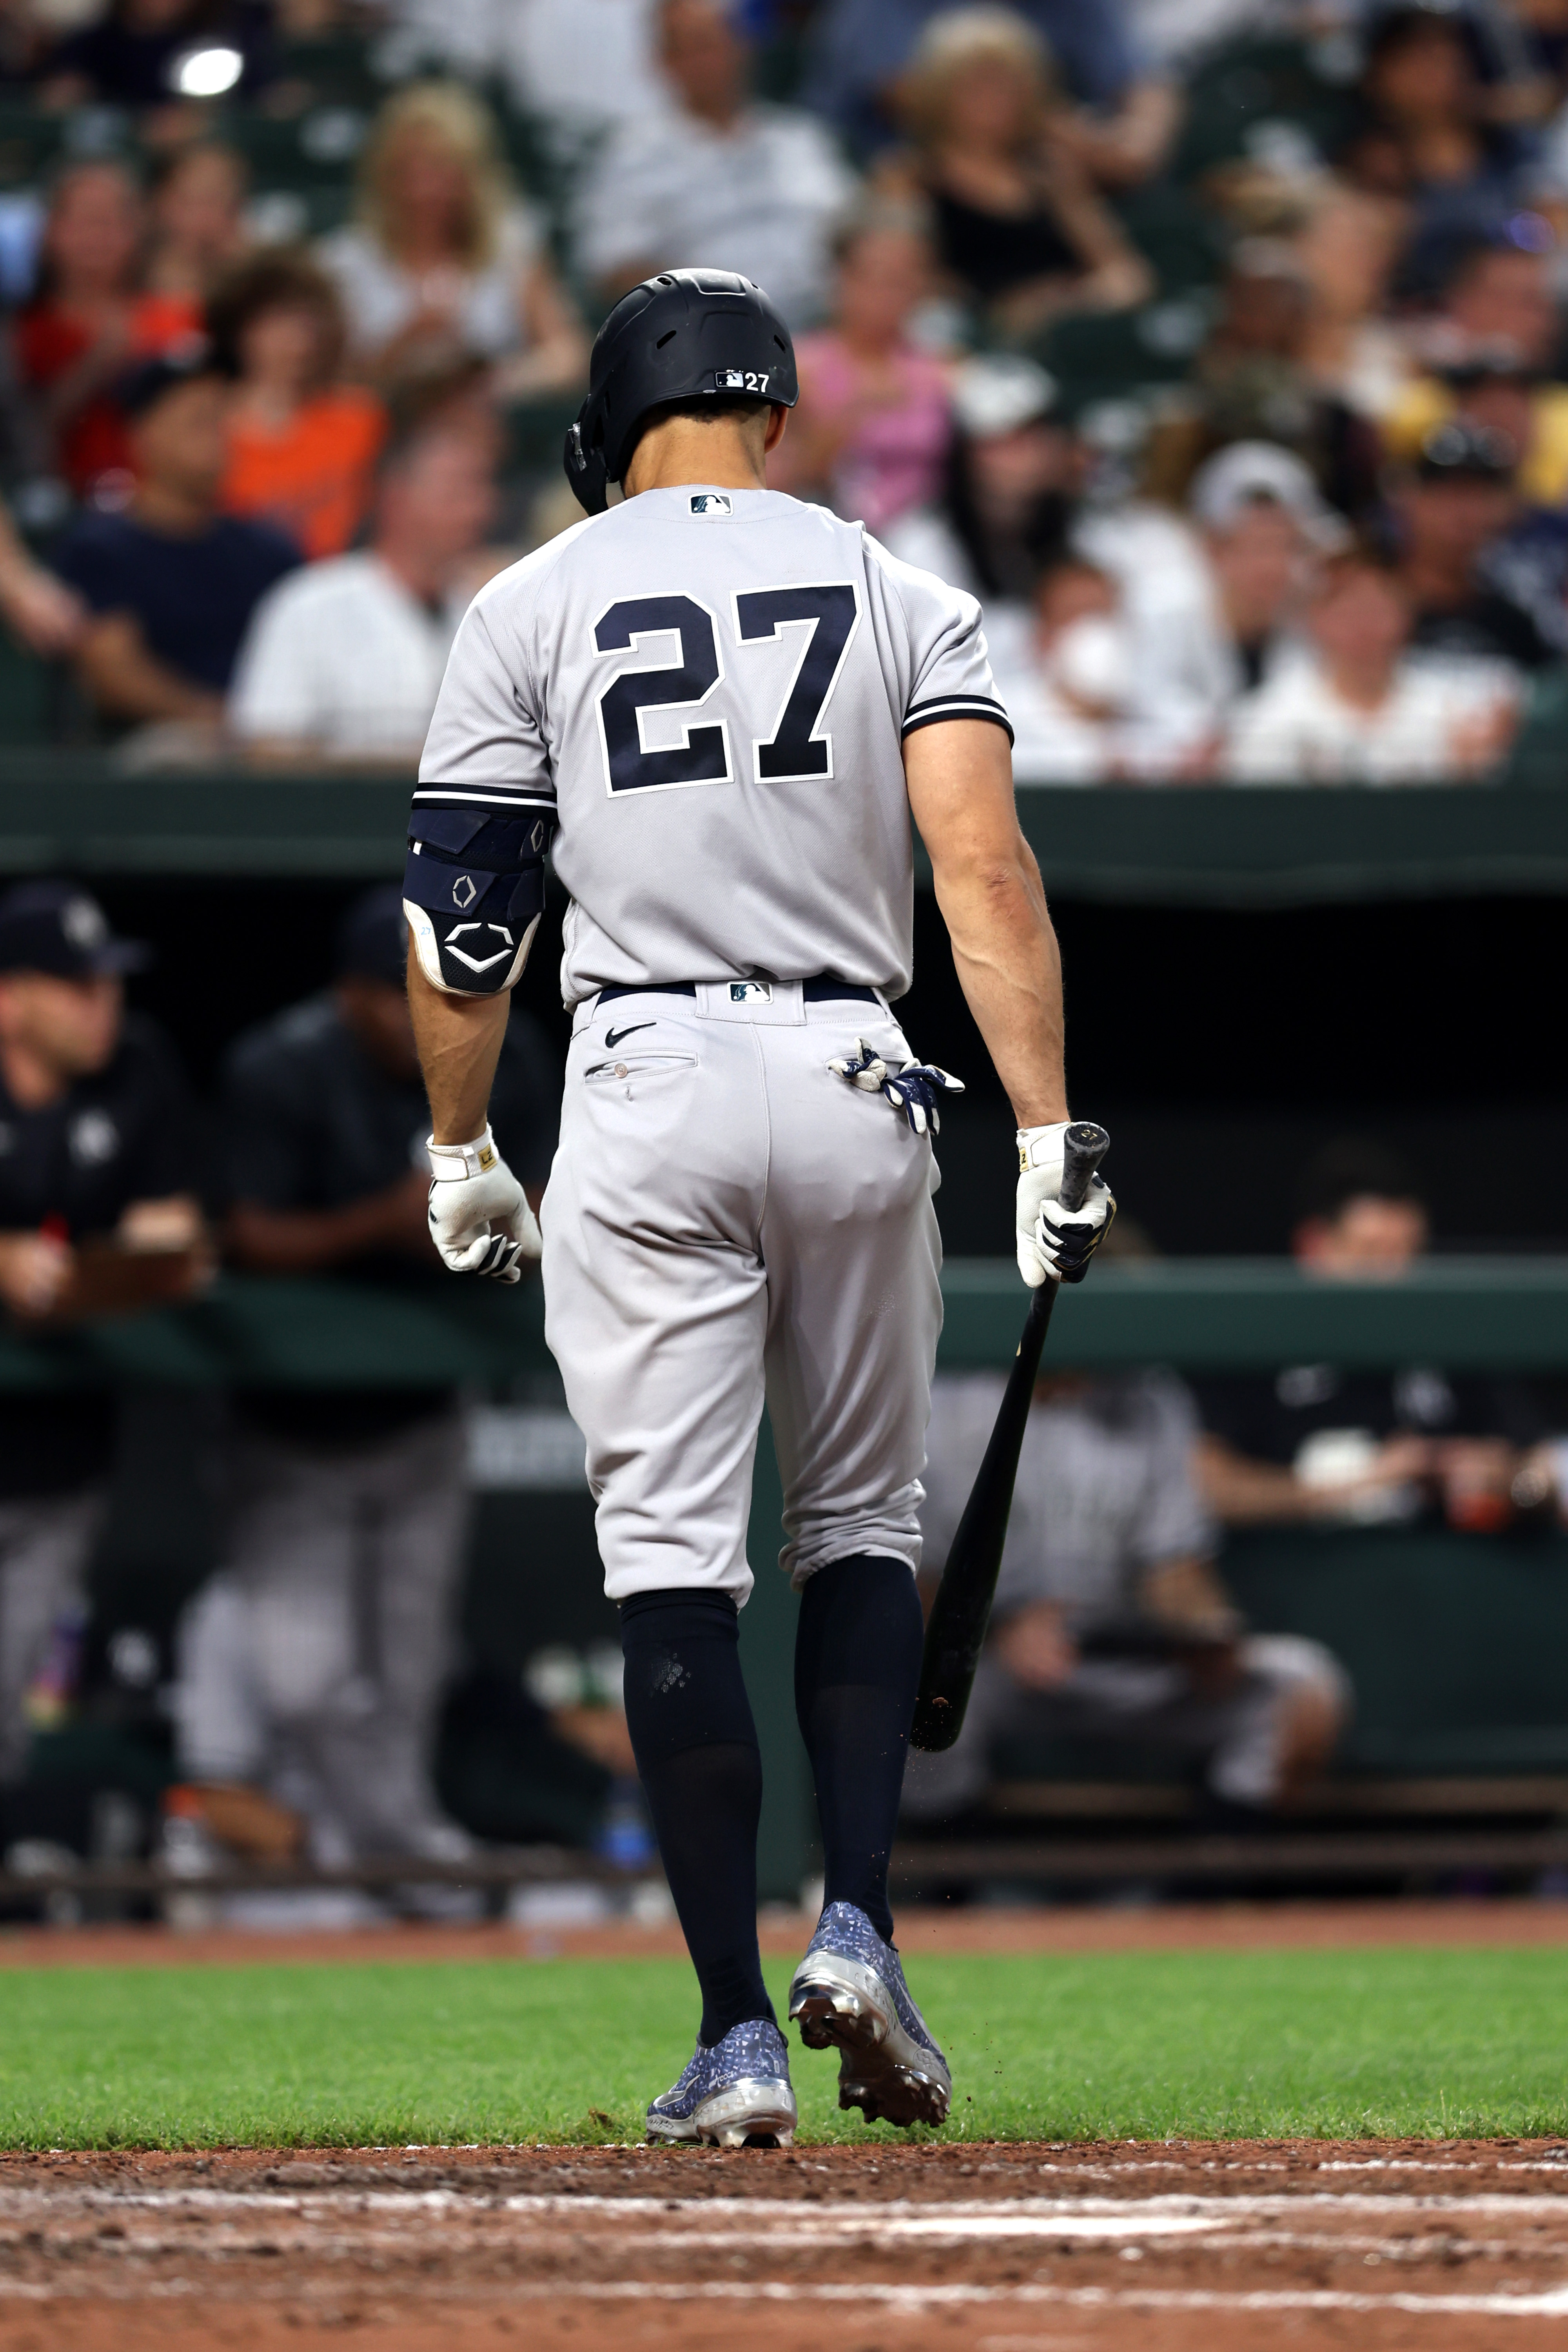 Giancarlo Stanton injury update: Yankees star (knee) unlikely to